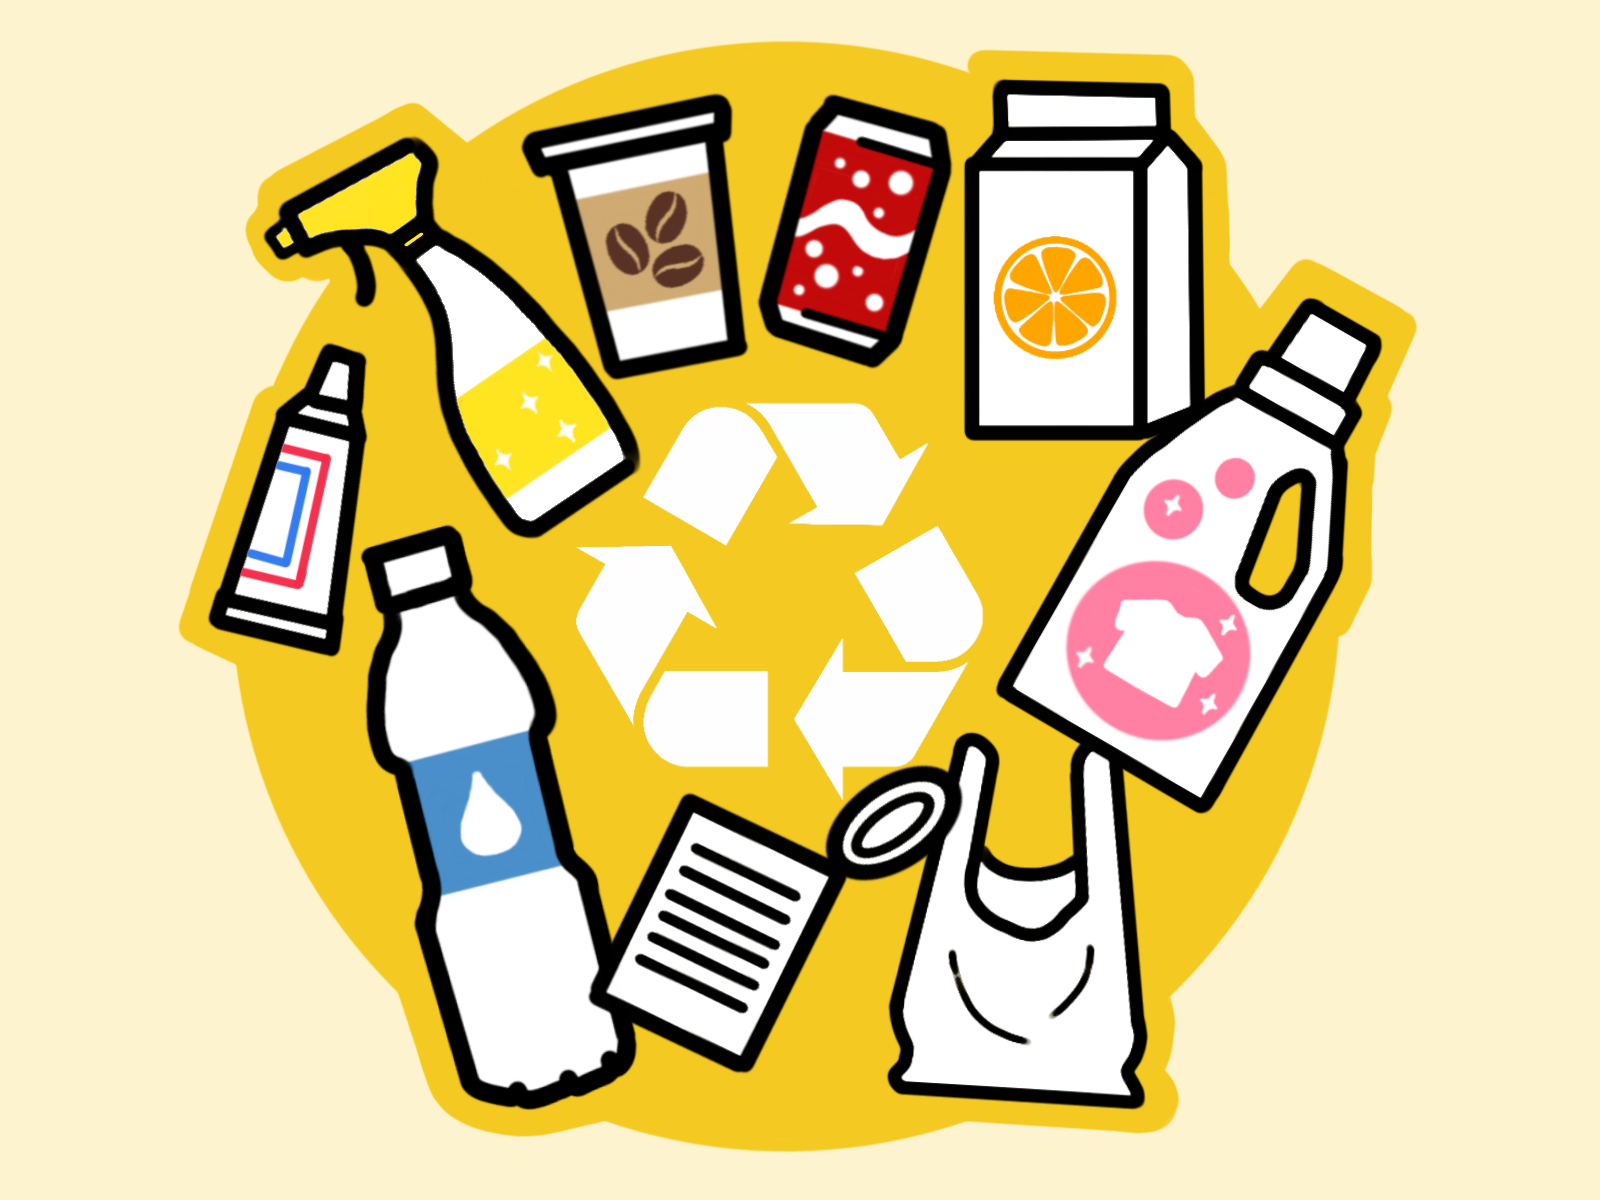 In den Gelben Sack bzw. Gelbe Tonne gehören Verpackungen wie Becher, Dosen, Styropry, Plastiktüten, Folien und Konservendosen